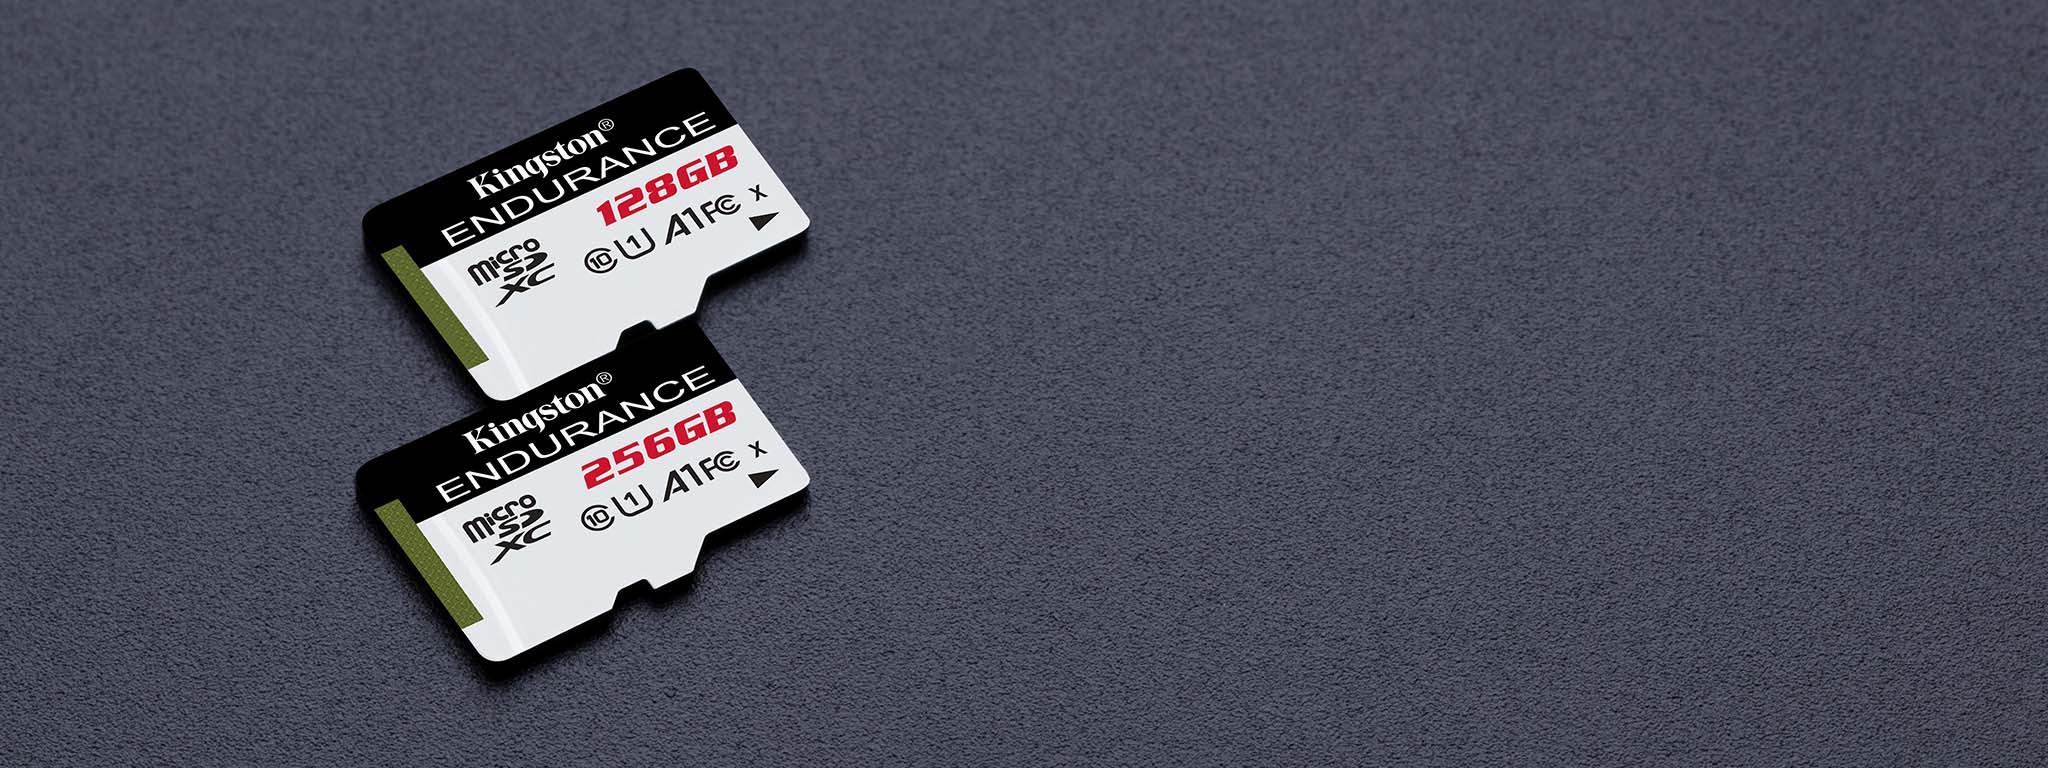 容量各为 128GB 和 64GB 的两张 High-Endurance microSD 存储卡位于黑色平面